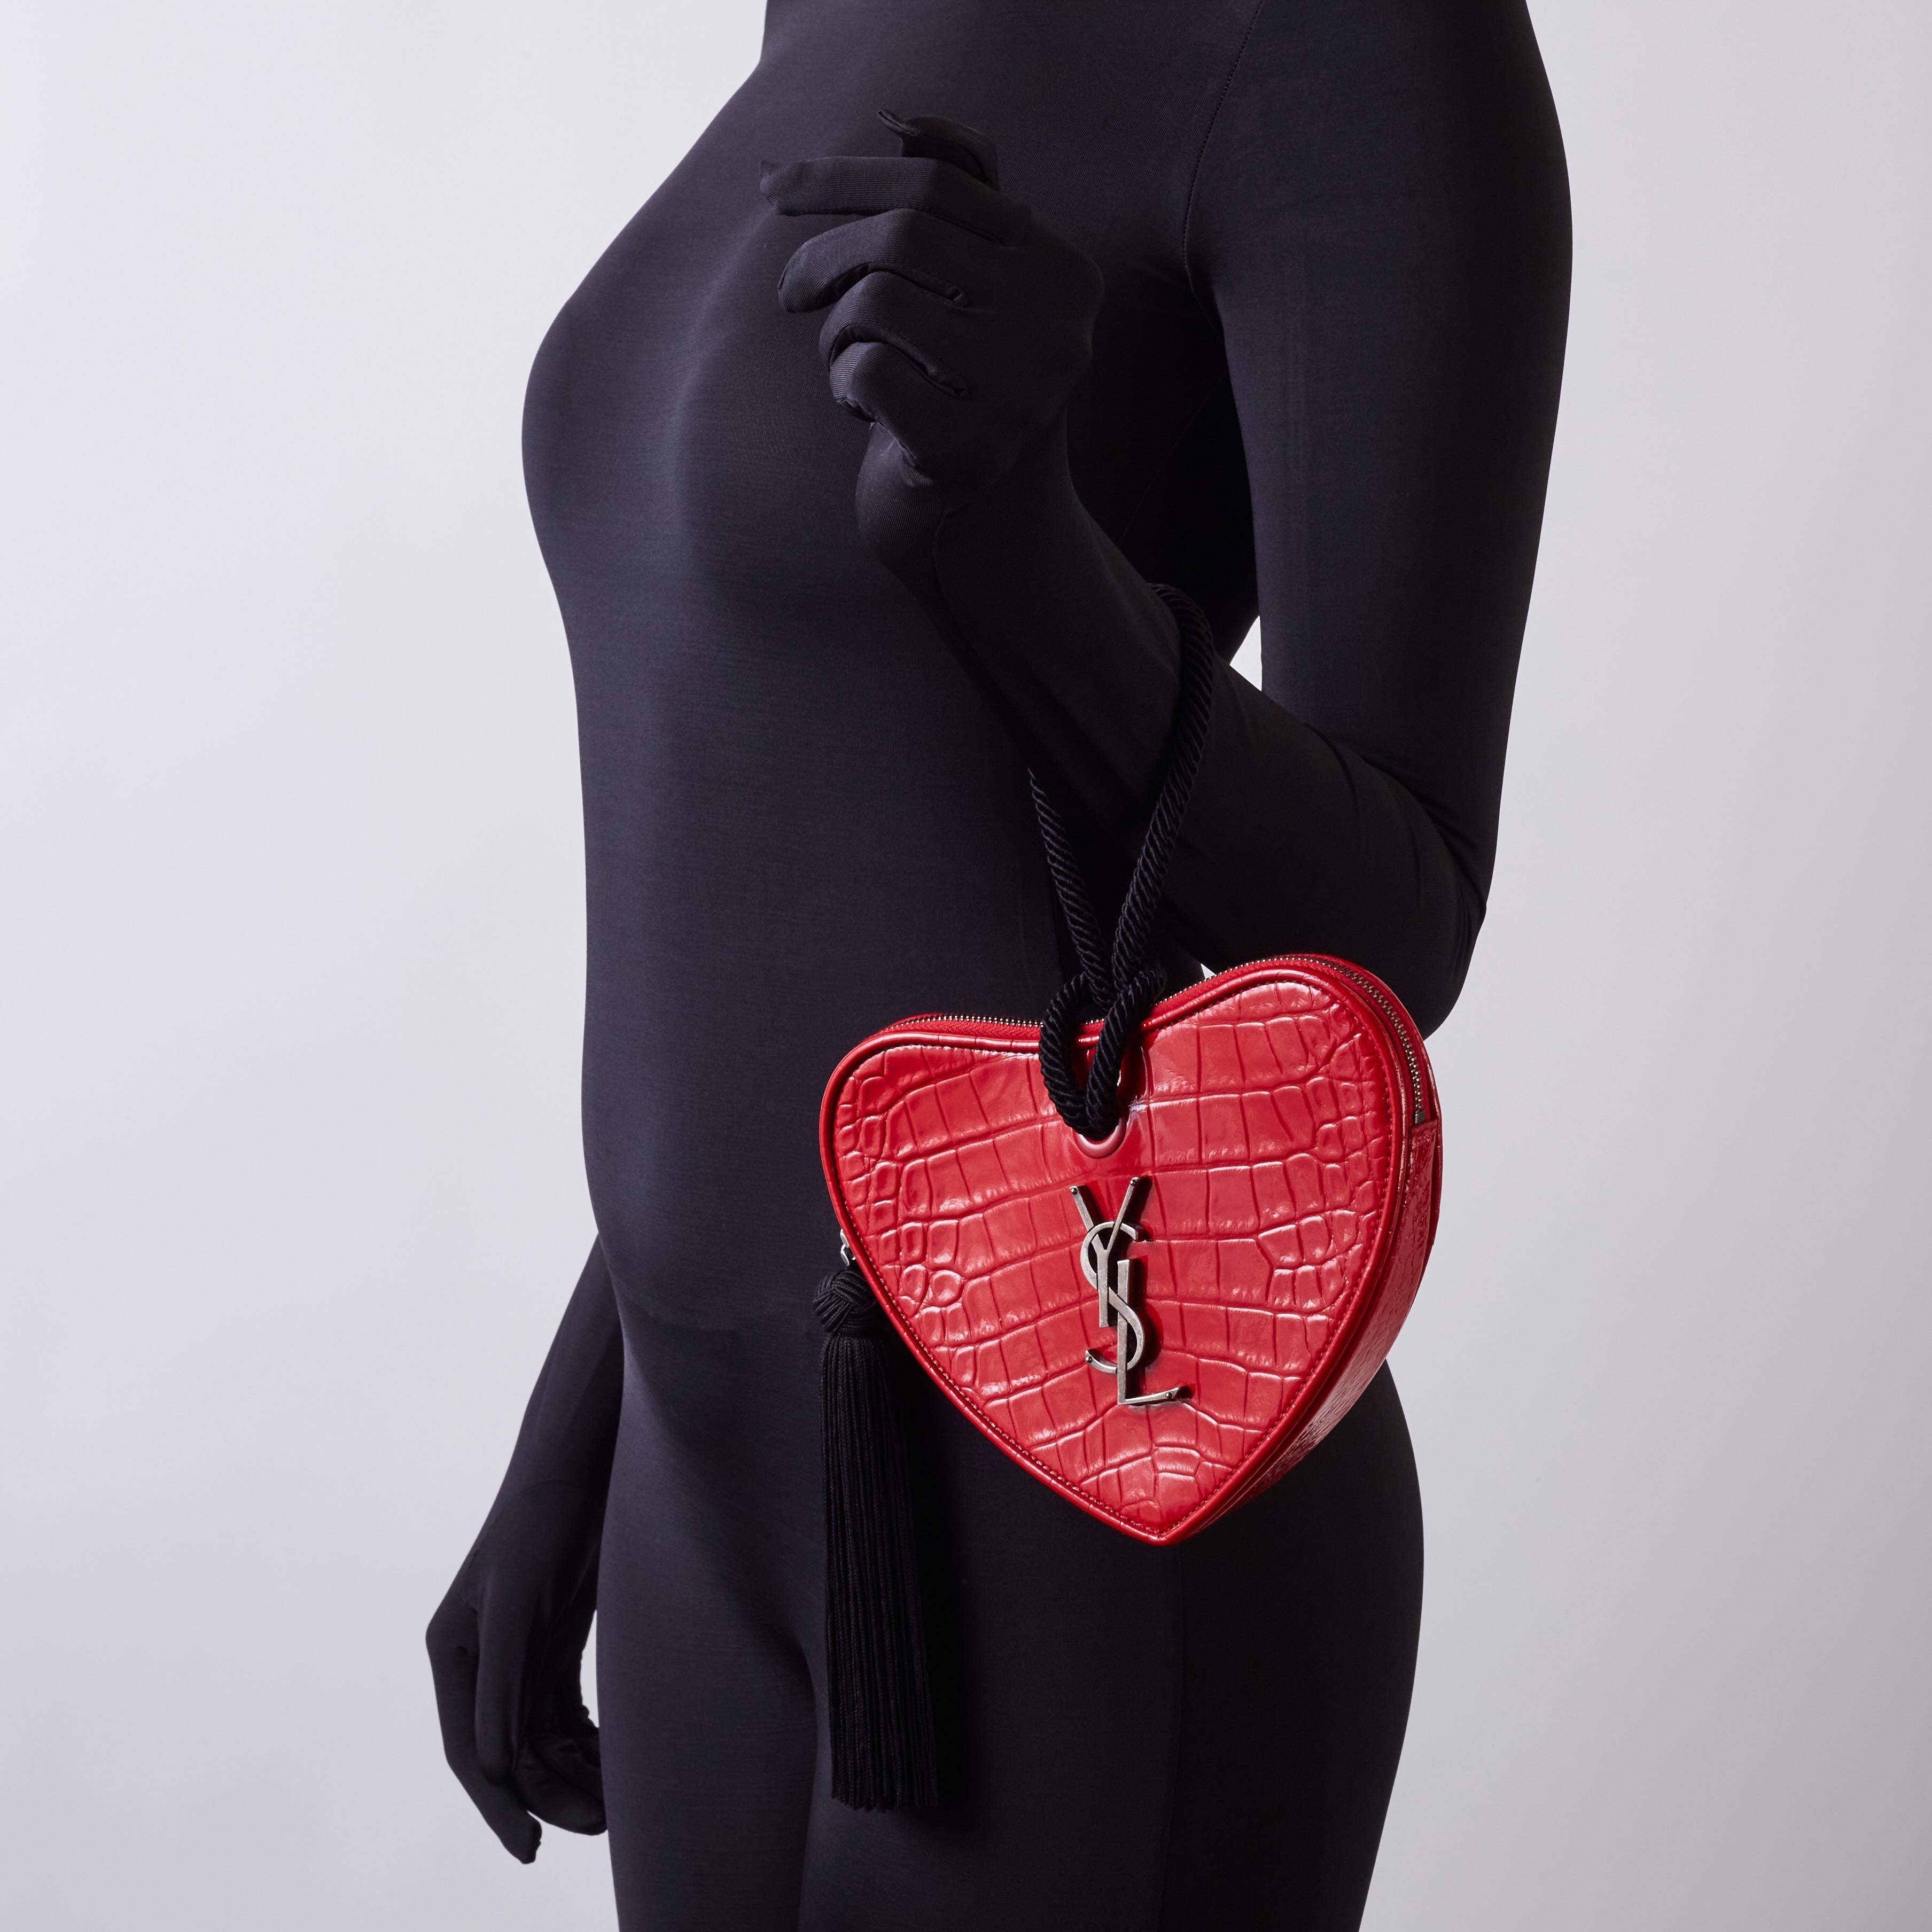 Cette pochette est réalisée en cuir rouge gaufré en forme de cœur. Sac coeur est un sac français. Le sac à main est orné d'un logo ysl en argent vieilli, d'une poignée poignet en corde noire et d'une tirette de fermeture à gland noire. La fermeture